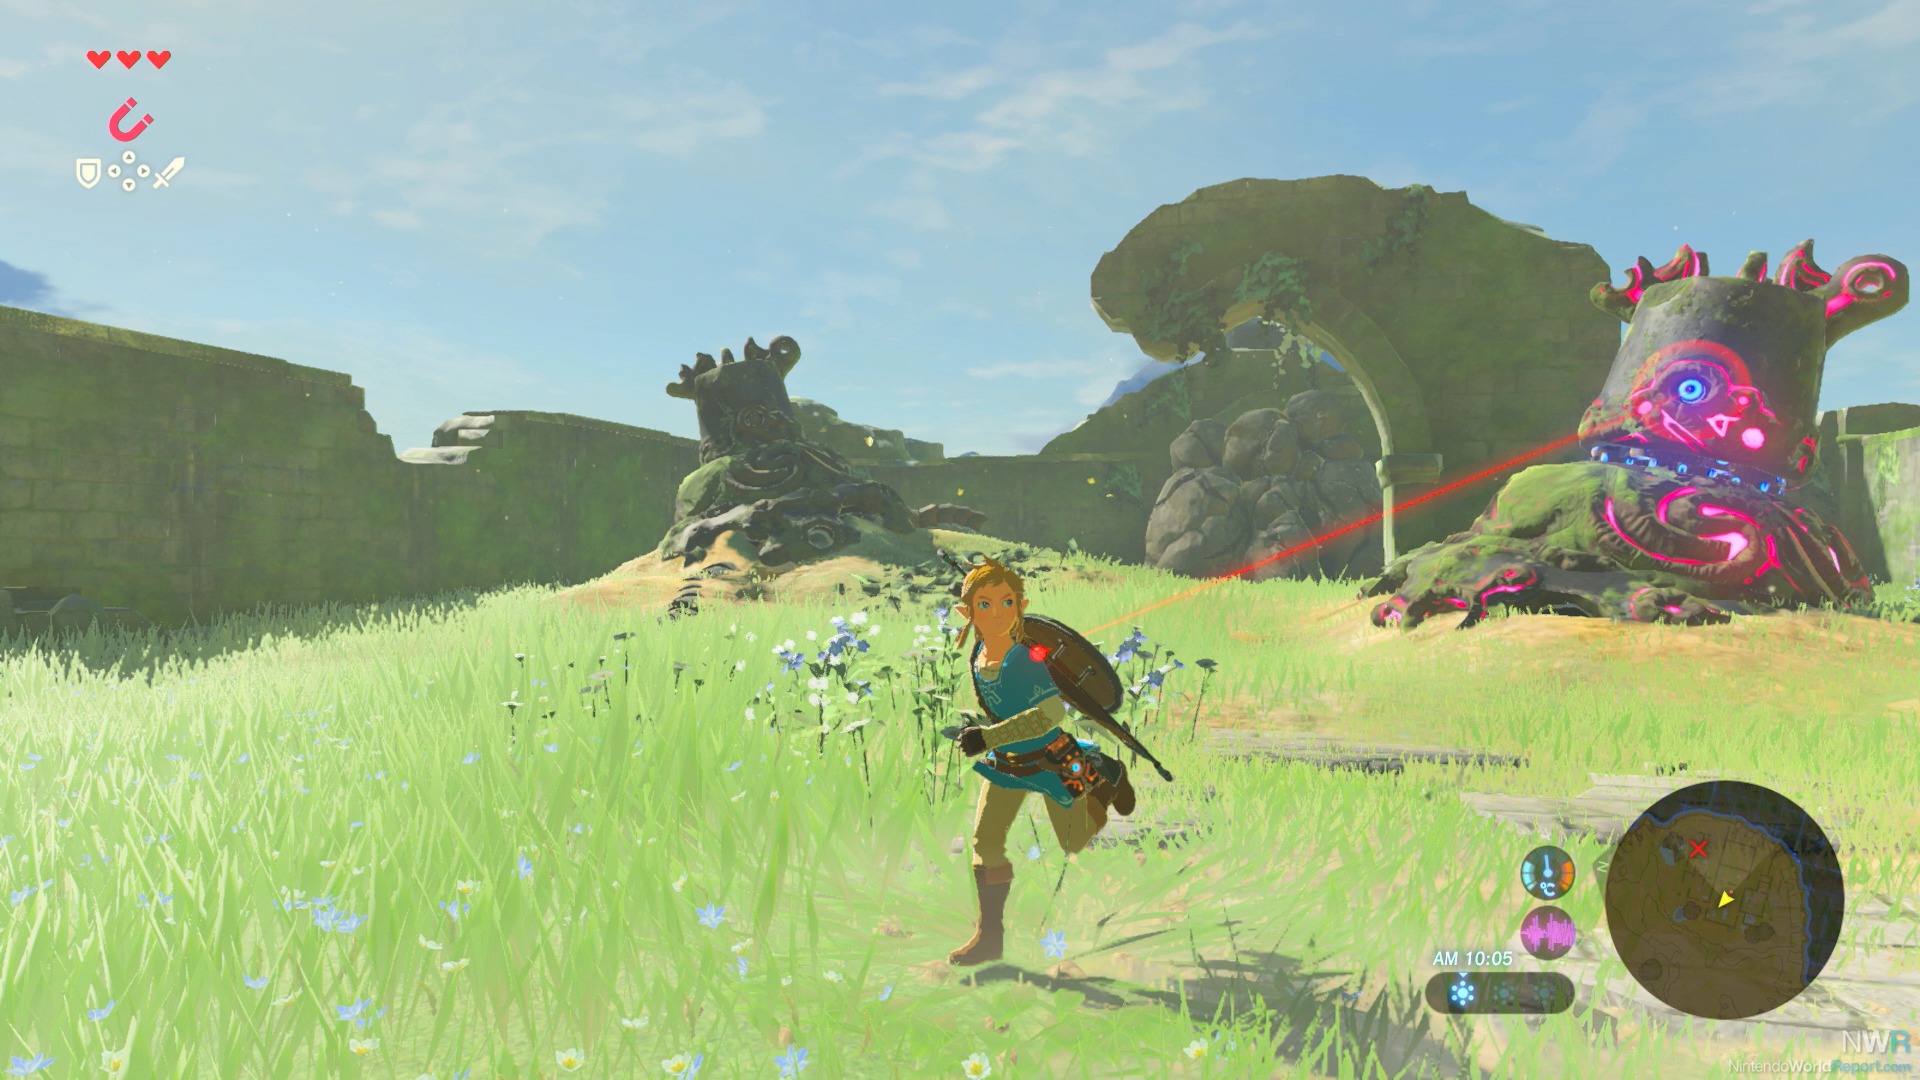 The Legend Of Zelda: Breath Of The Wild review: Nintendo's best